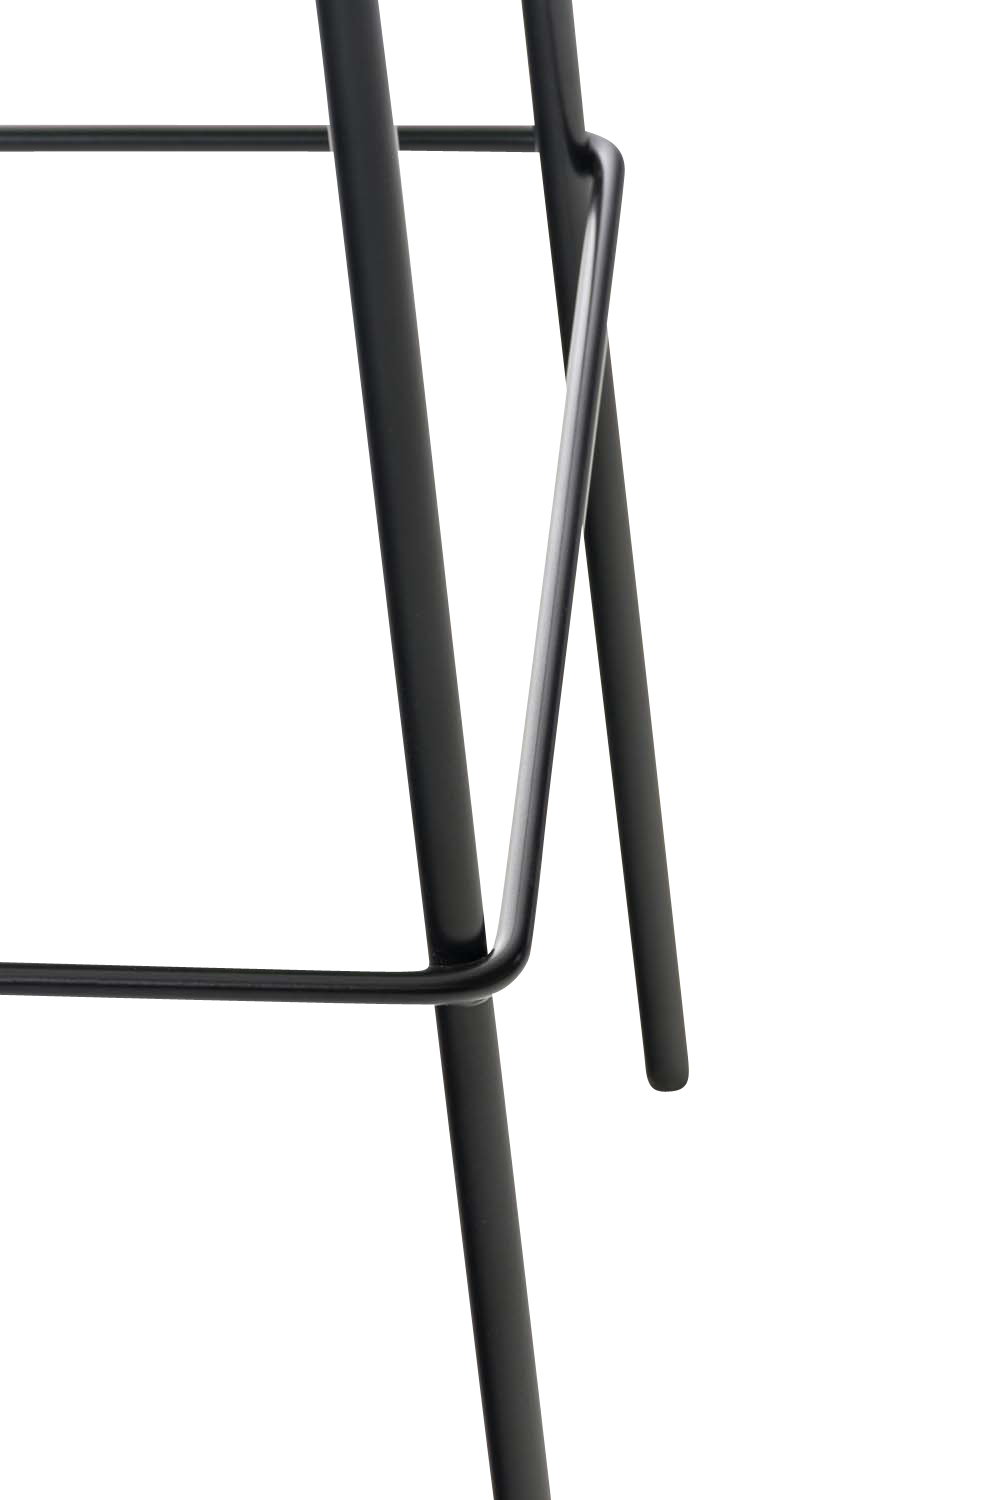 Barhocker Hoover Kunststoff 4-Fuß Gestell grau schwarz